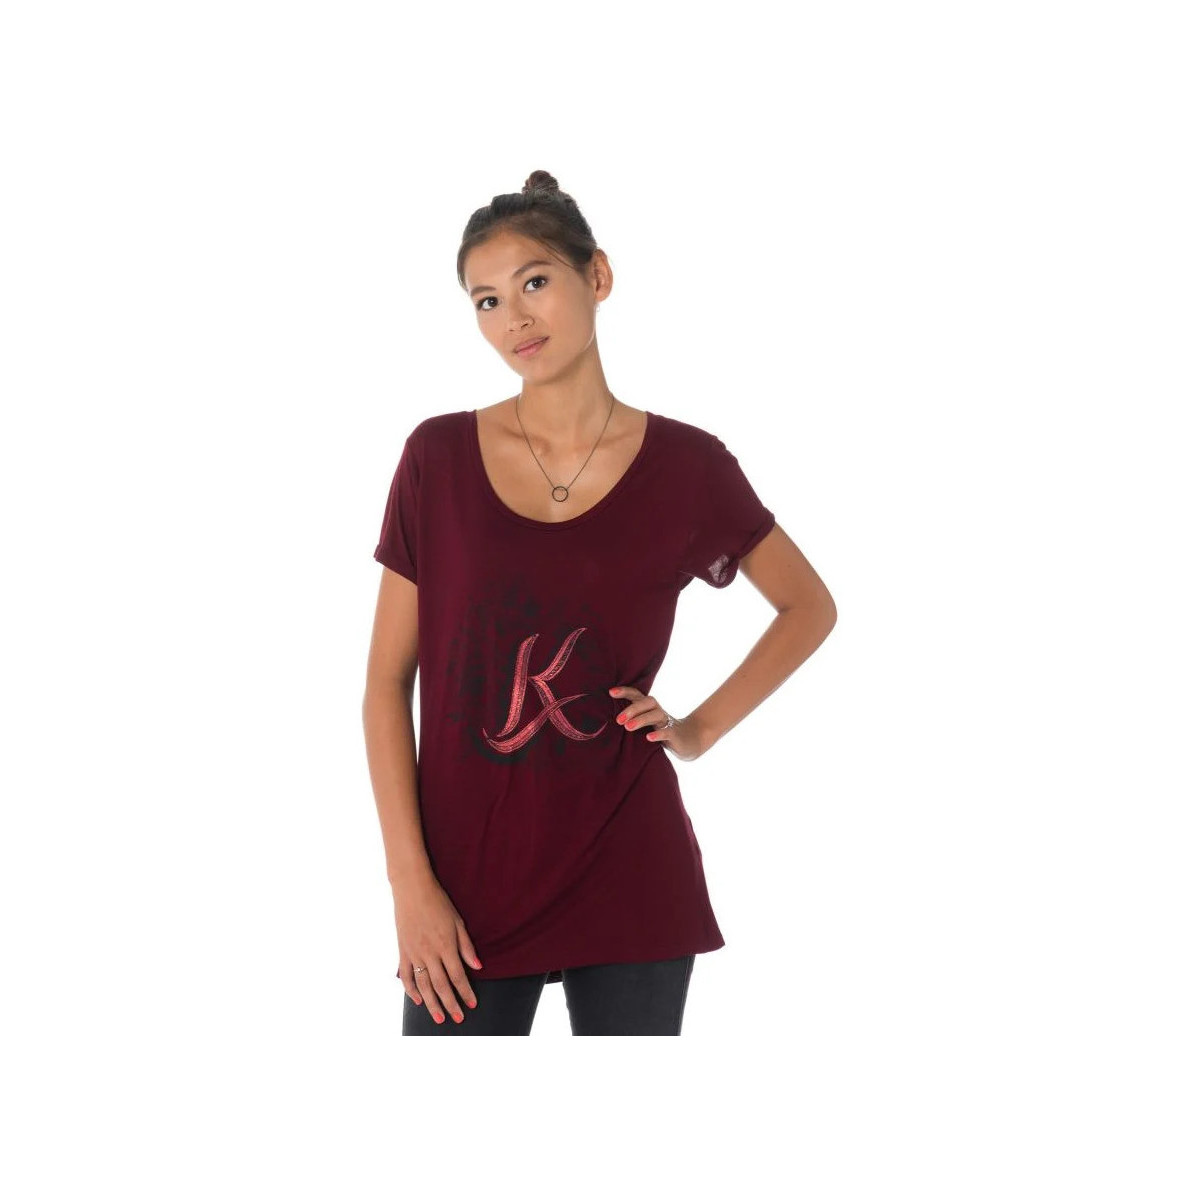 Vêtements Femme Débardeurs / T-shirts sans manche Kaporal GRAVY RAISIN Rouge